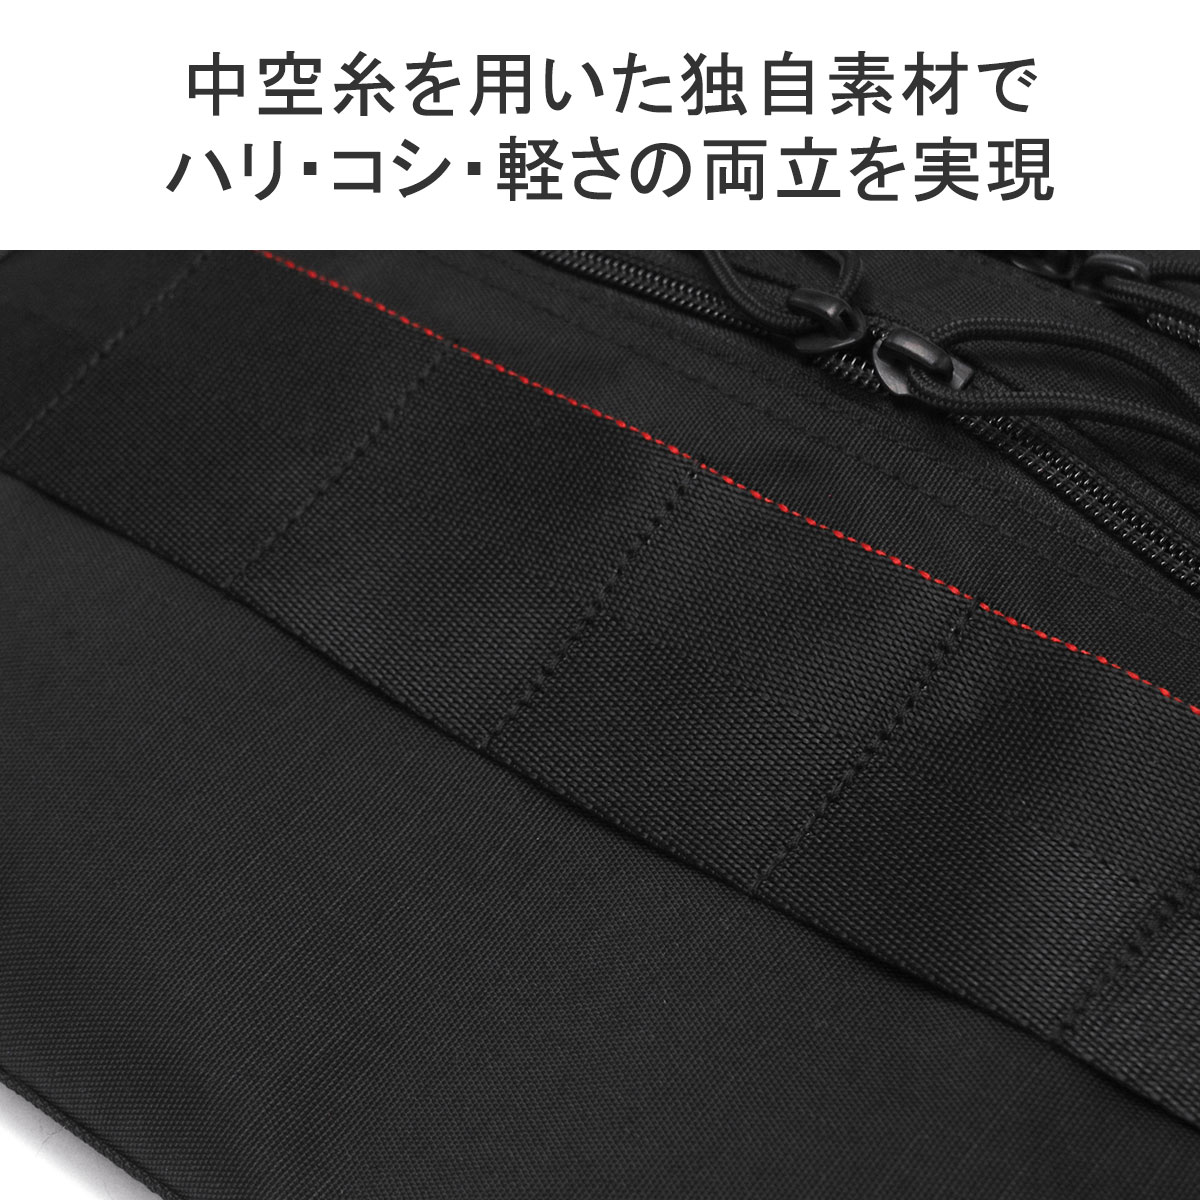 最大39%☆5/1限定 日本正規品 ブリーフィング ショルダーバッグ メンズ